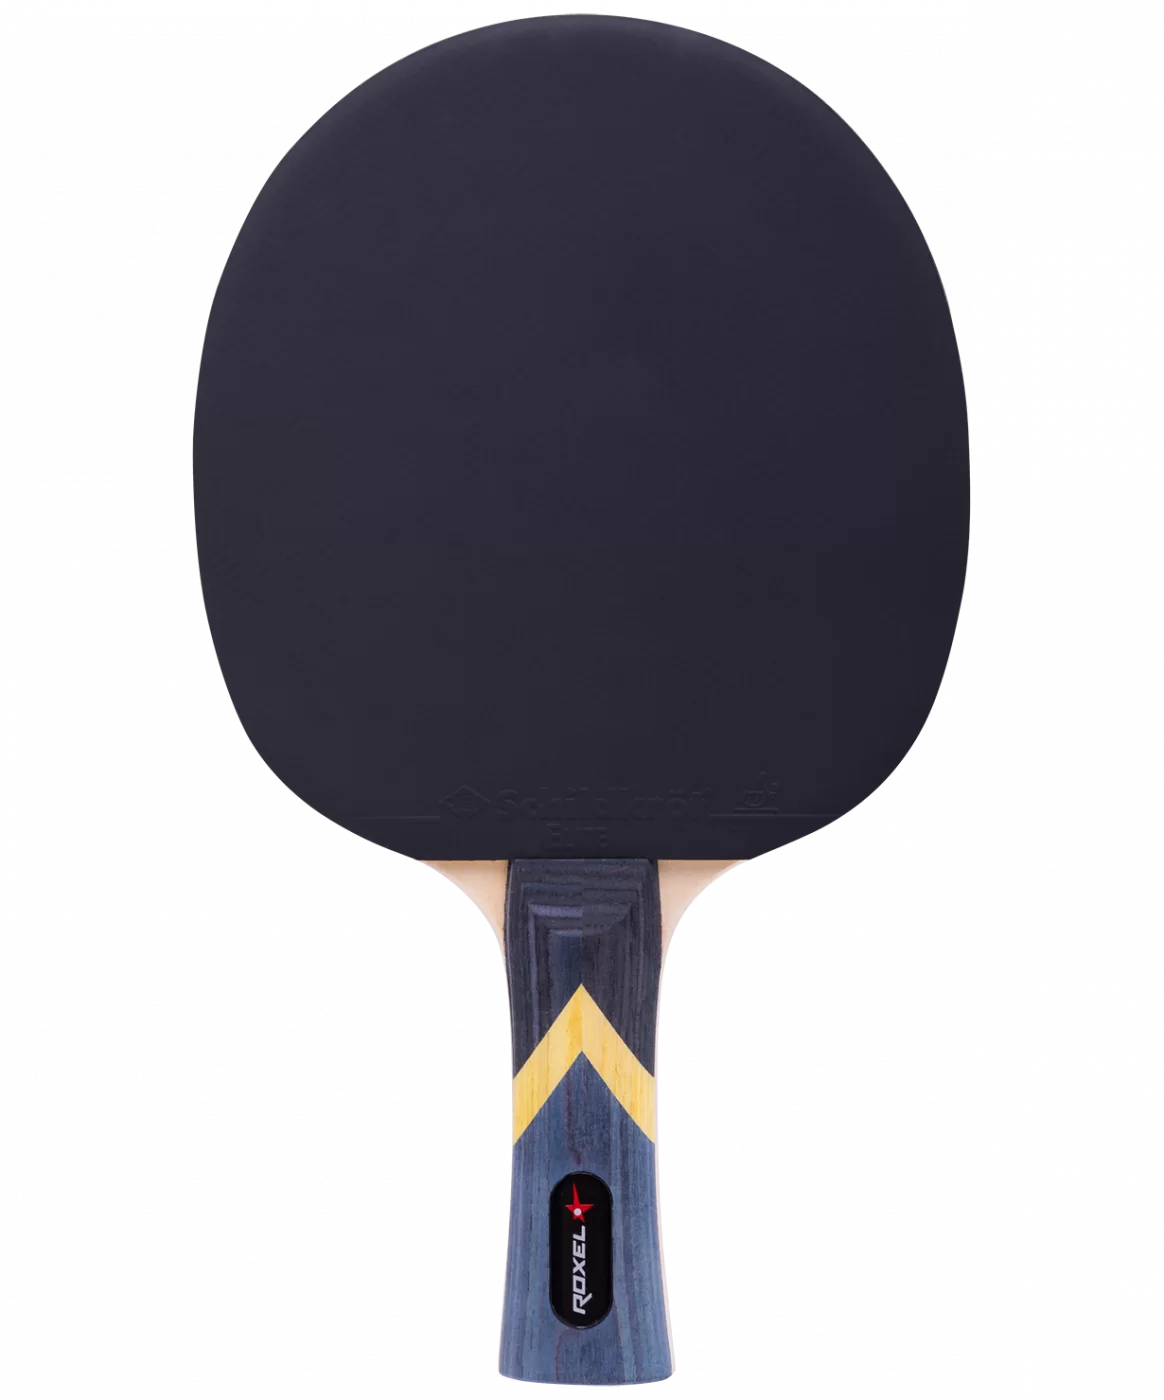 Реальное фото Ракетка для настольного тенниса Roxel 1* Forward коническая 15355 от магазина СпортСЕ